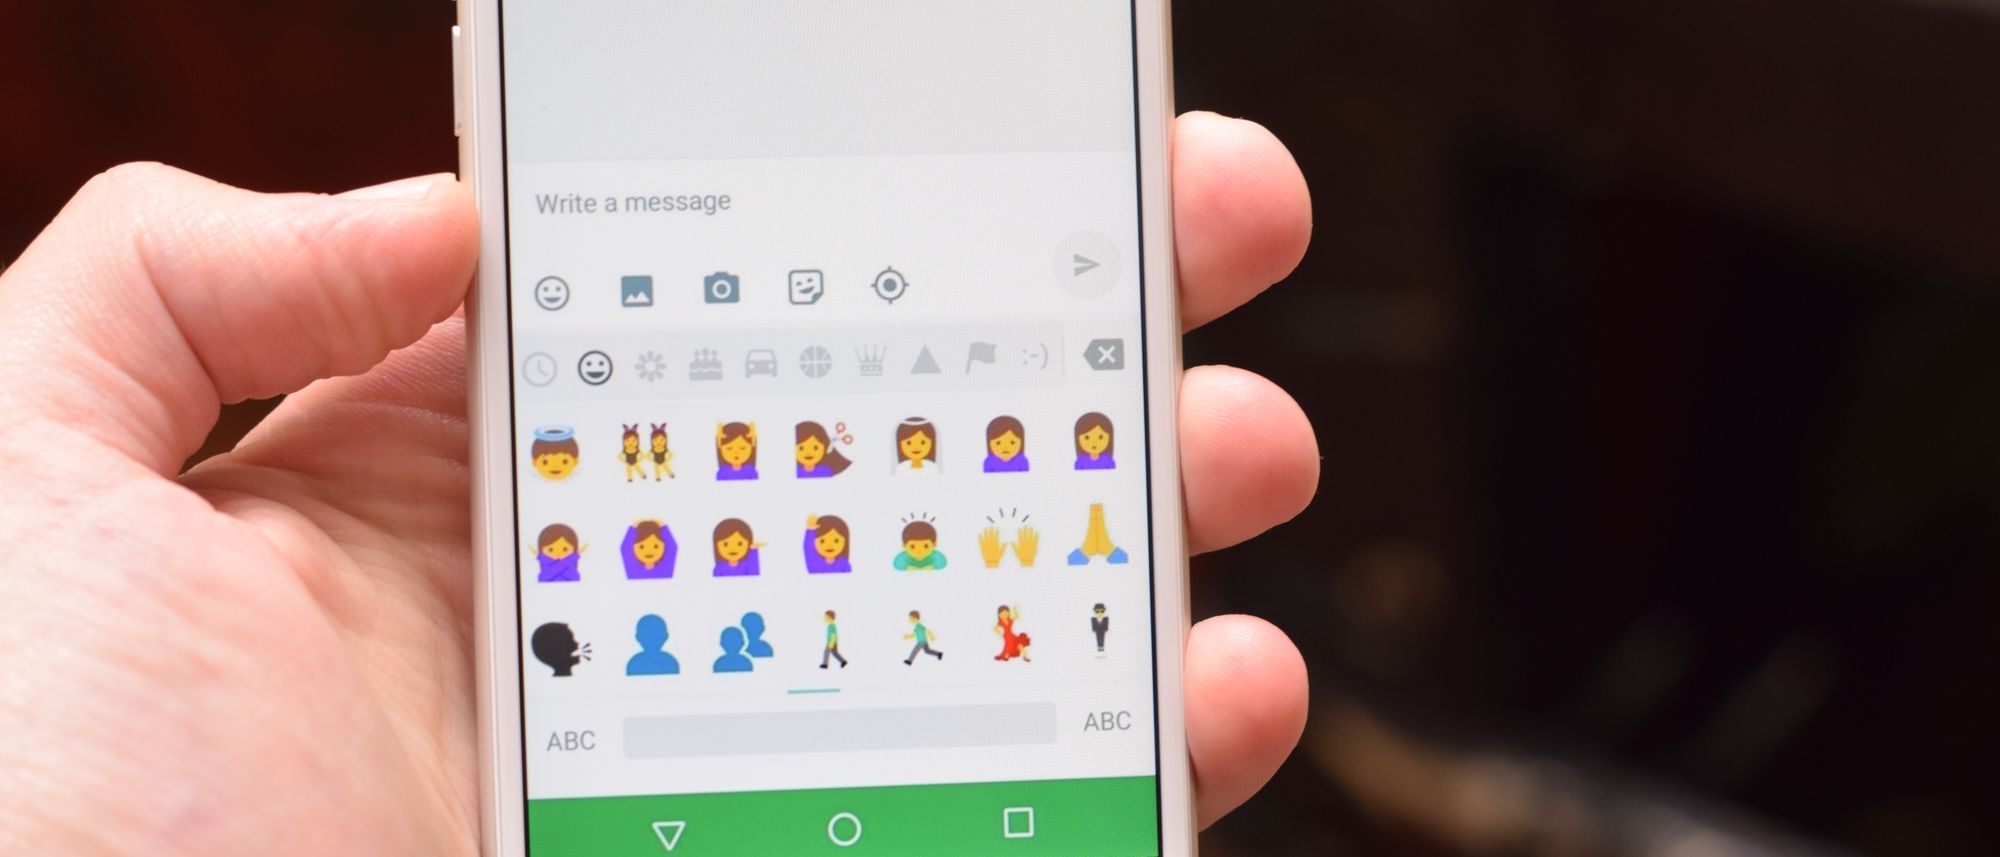 Android N Drops Gender-Neutral Emojis